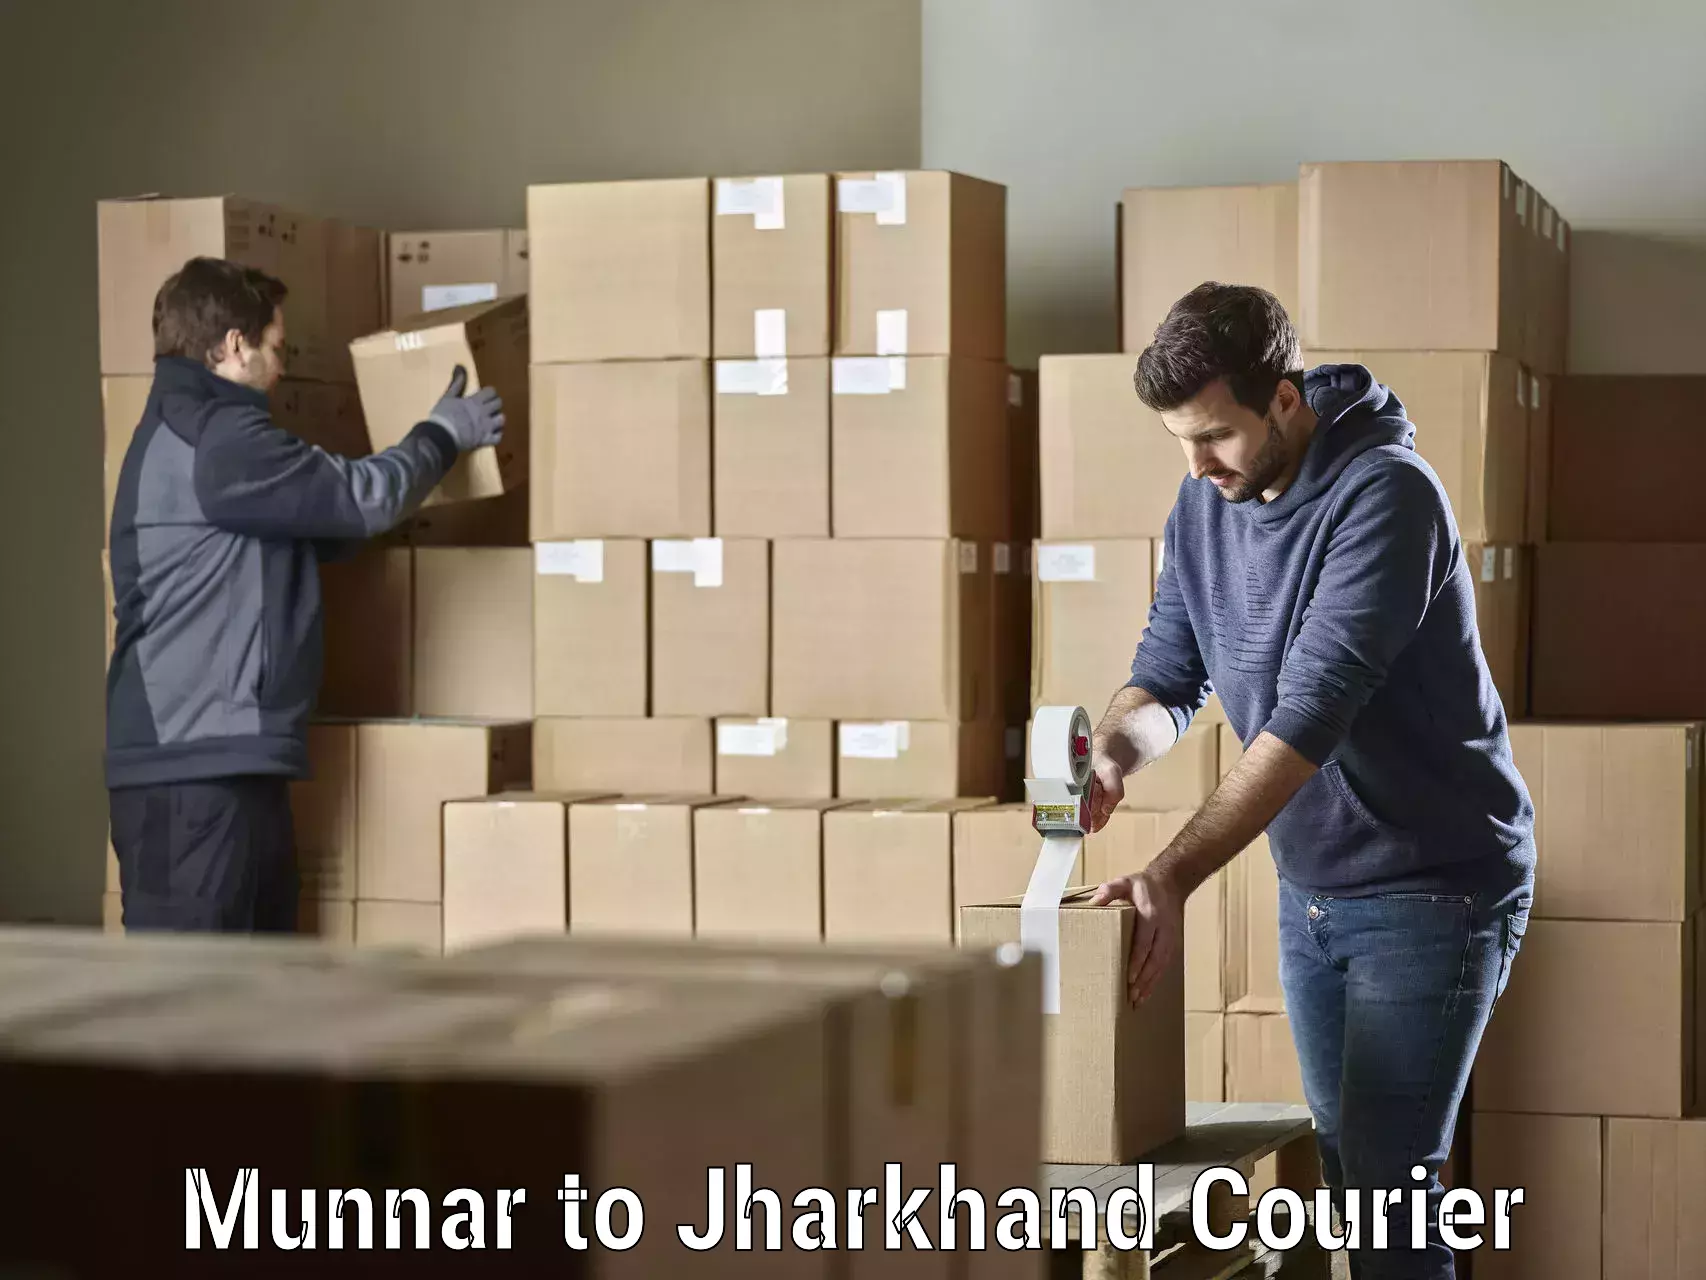 Delivery service partnership Munnar to Chakuliya